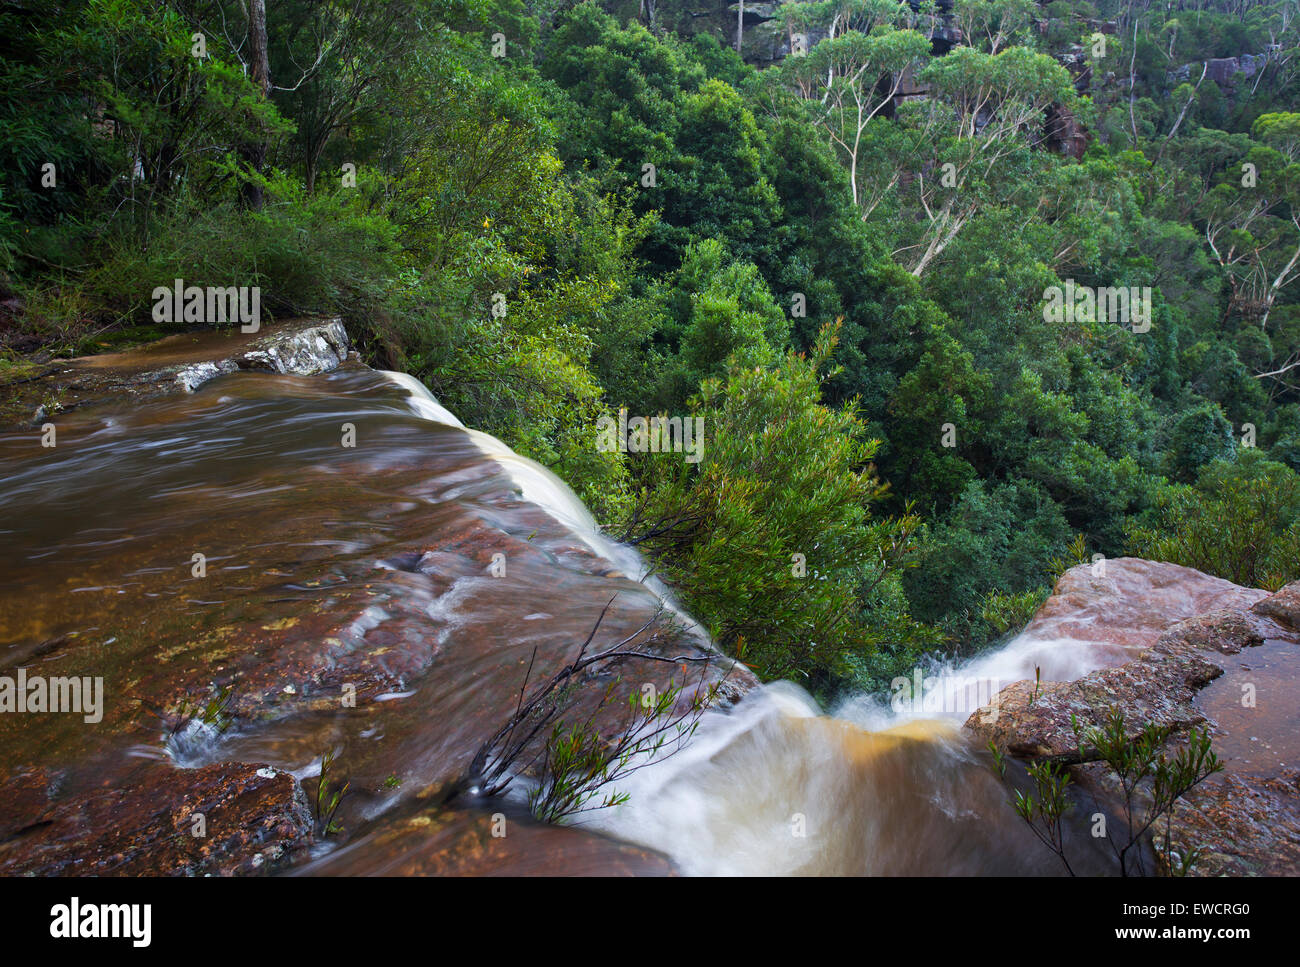 Au cours de l'eau haut de Kelly's Falls, une cascade dans la zone de conservation de l'État Garawarra, NSW, Australie Banque D'Images